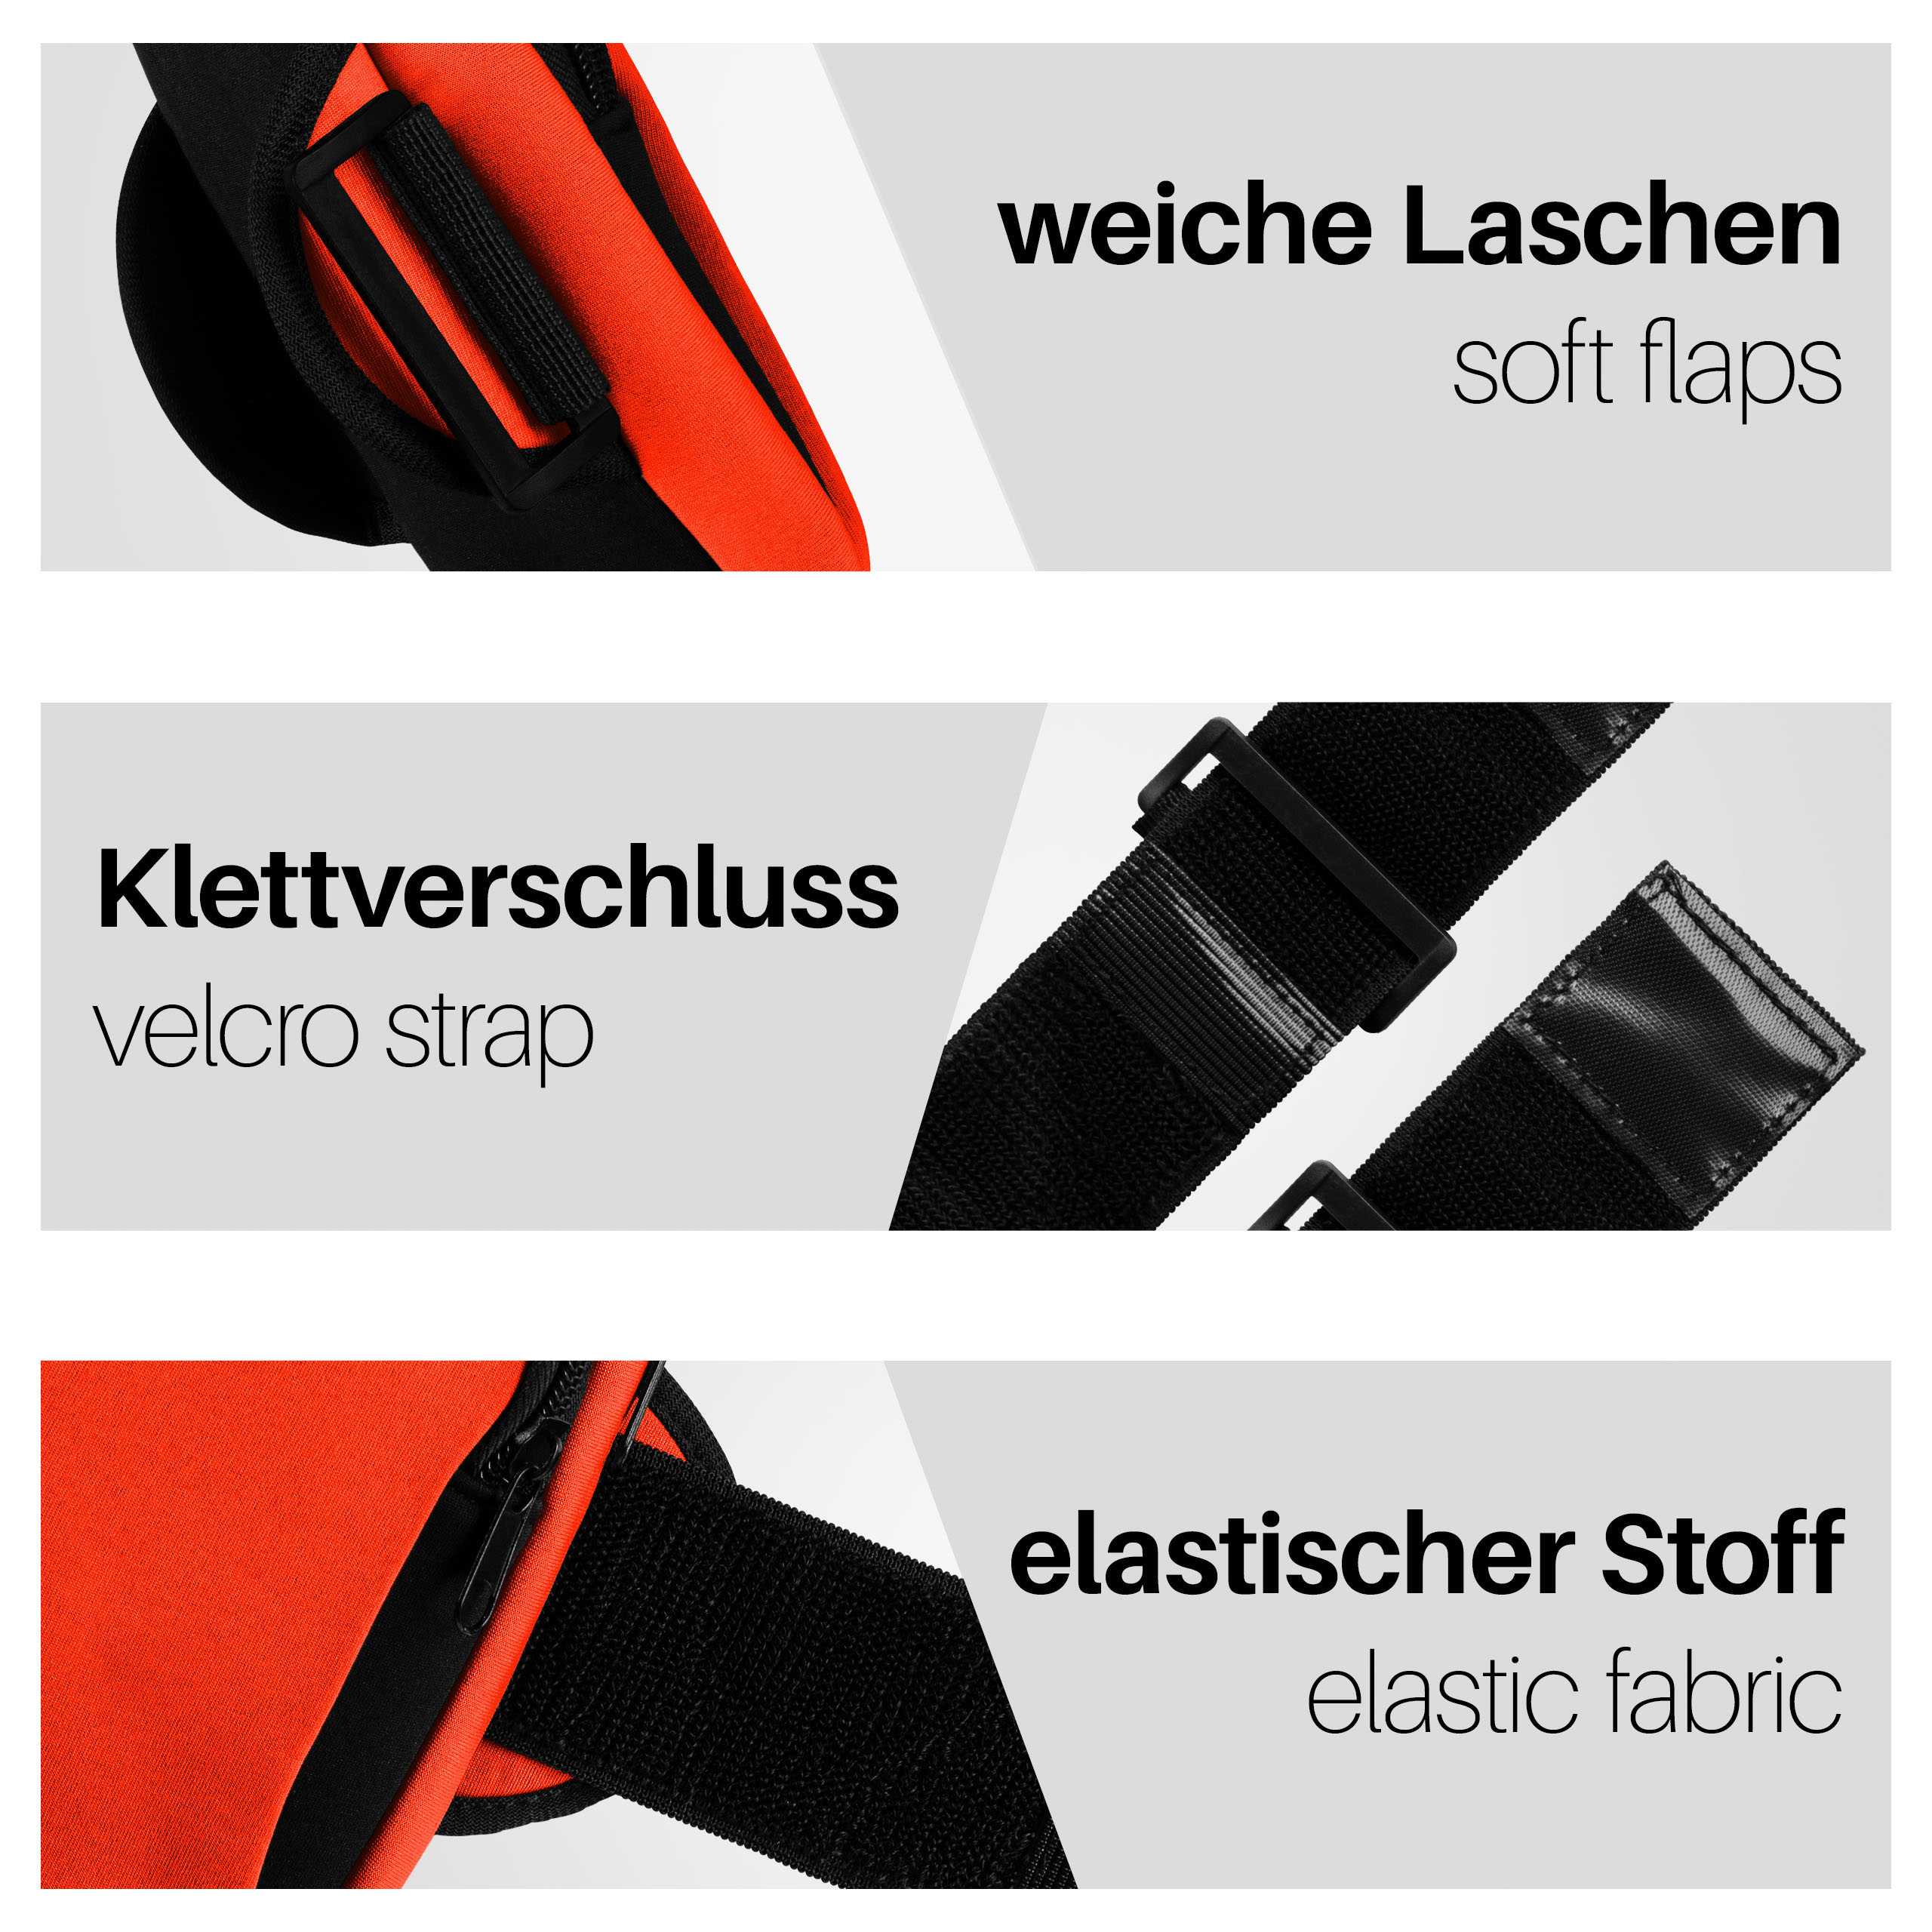 MOEX Sport Armband, BlackBerry, Cover, Full Orange KEY2,